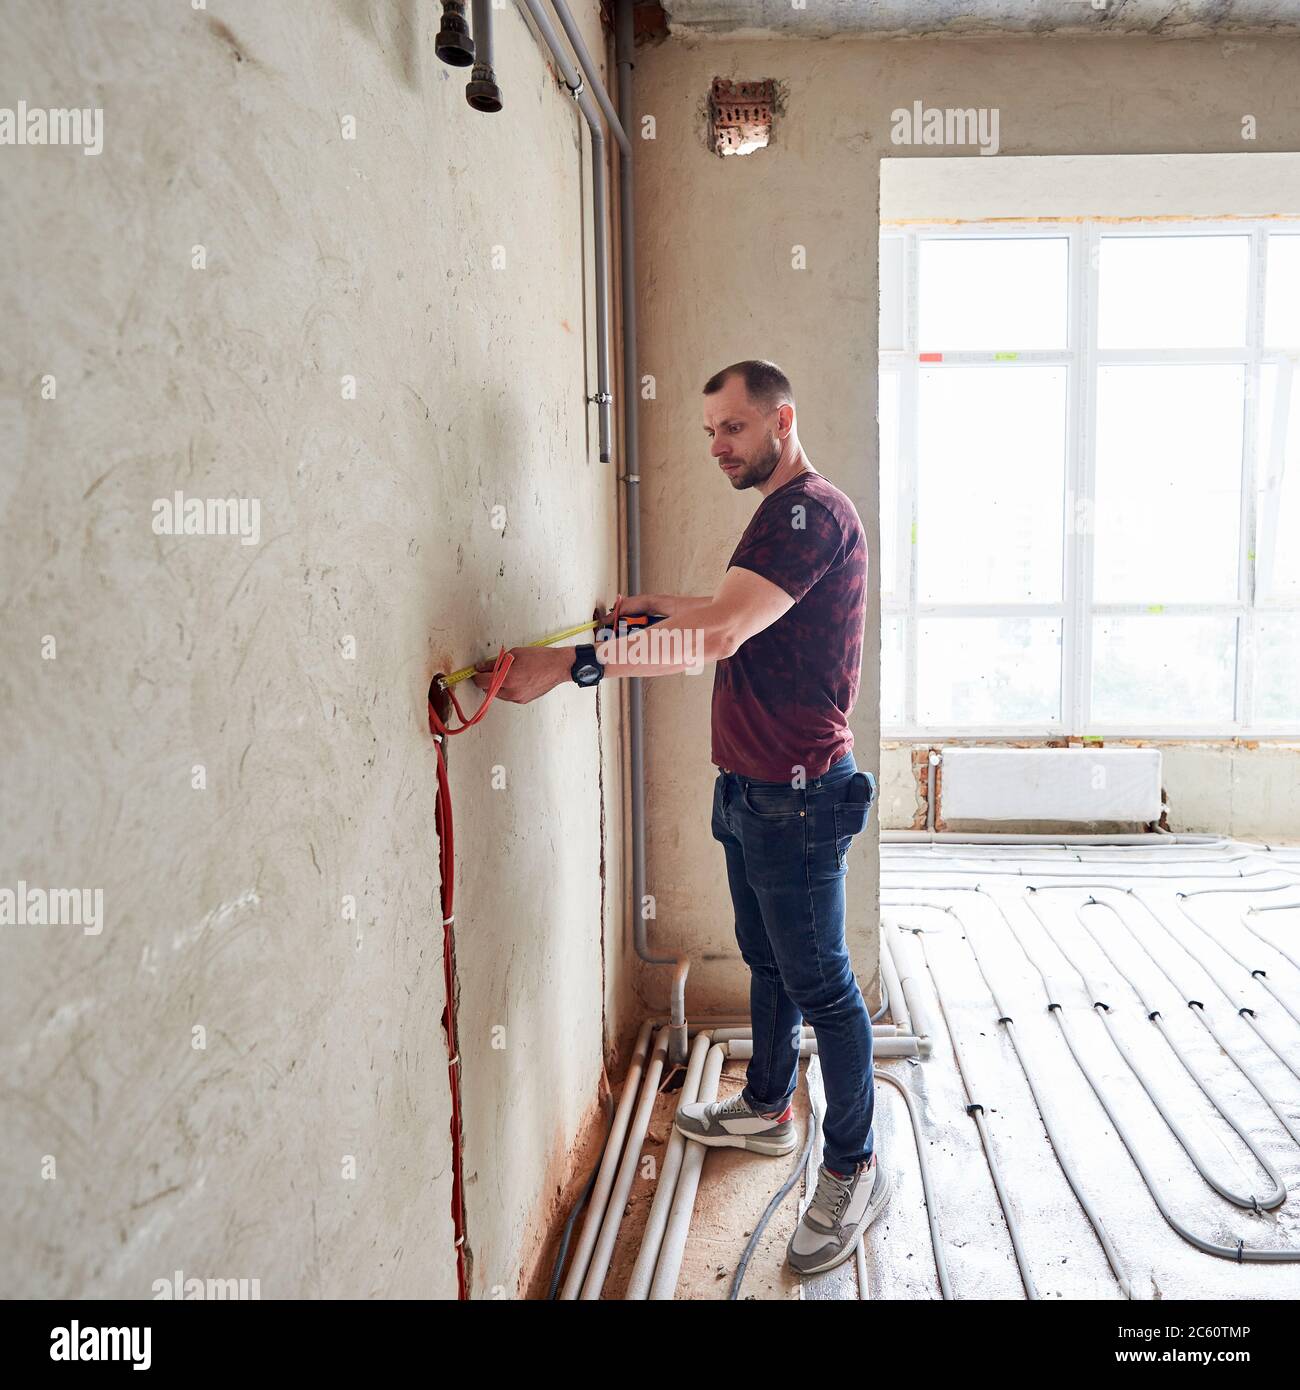 Giovane uomo in appartamento vuoto incompiuto che misura la parete con  l'aiuto di un metro a nastro, in piedi su pavimento riscaldamento sistema  di tubi contro finestra panoramica. Concetto di rinnovo e